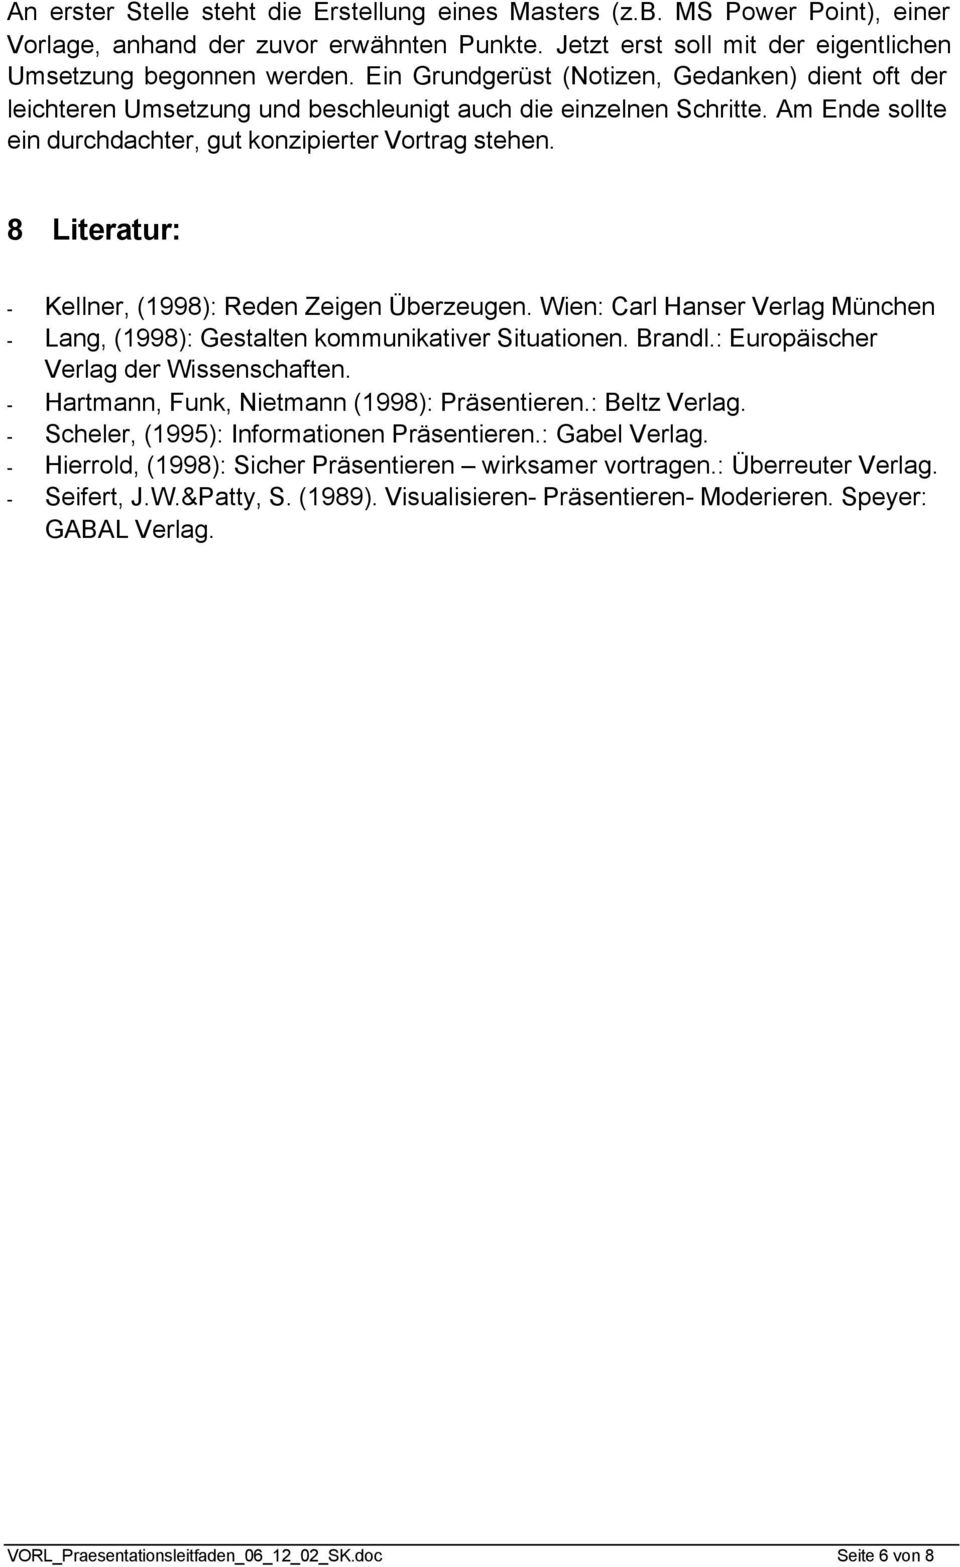 8 Literatur: - Kellner, (1998): Reden Zeigen Überzeugen. Wien: Carl Hanser Verlag München - Lang, (1998): Gestalten kommunikativer Situationen. Brandl.: Europäischer Verlag der Wissenschaften.